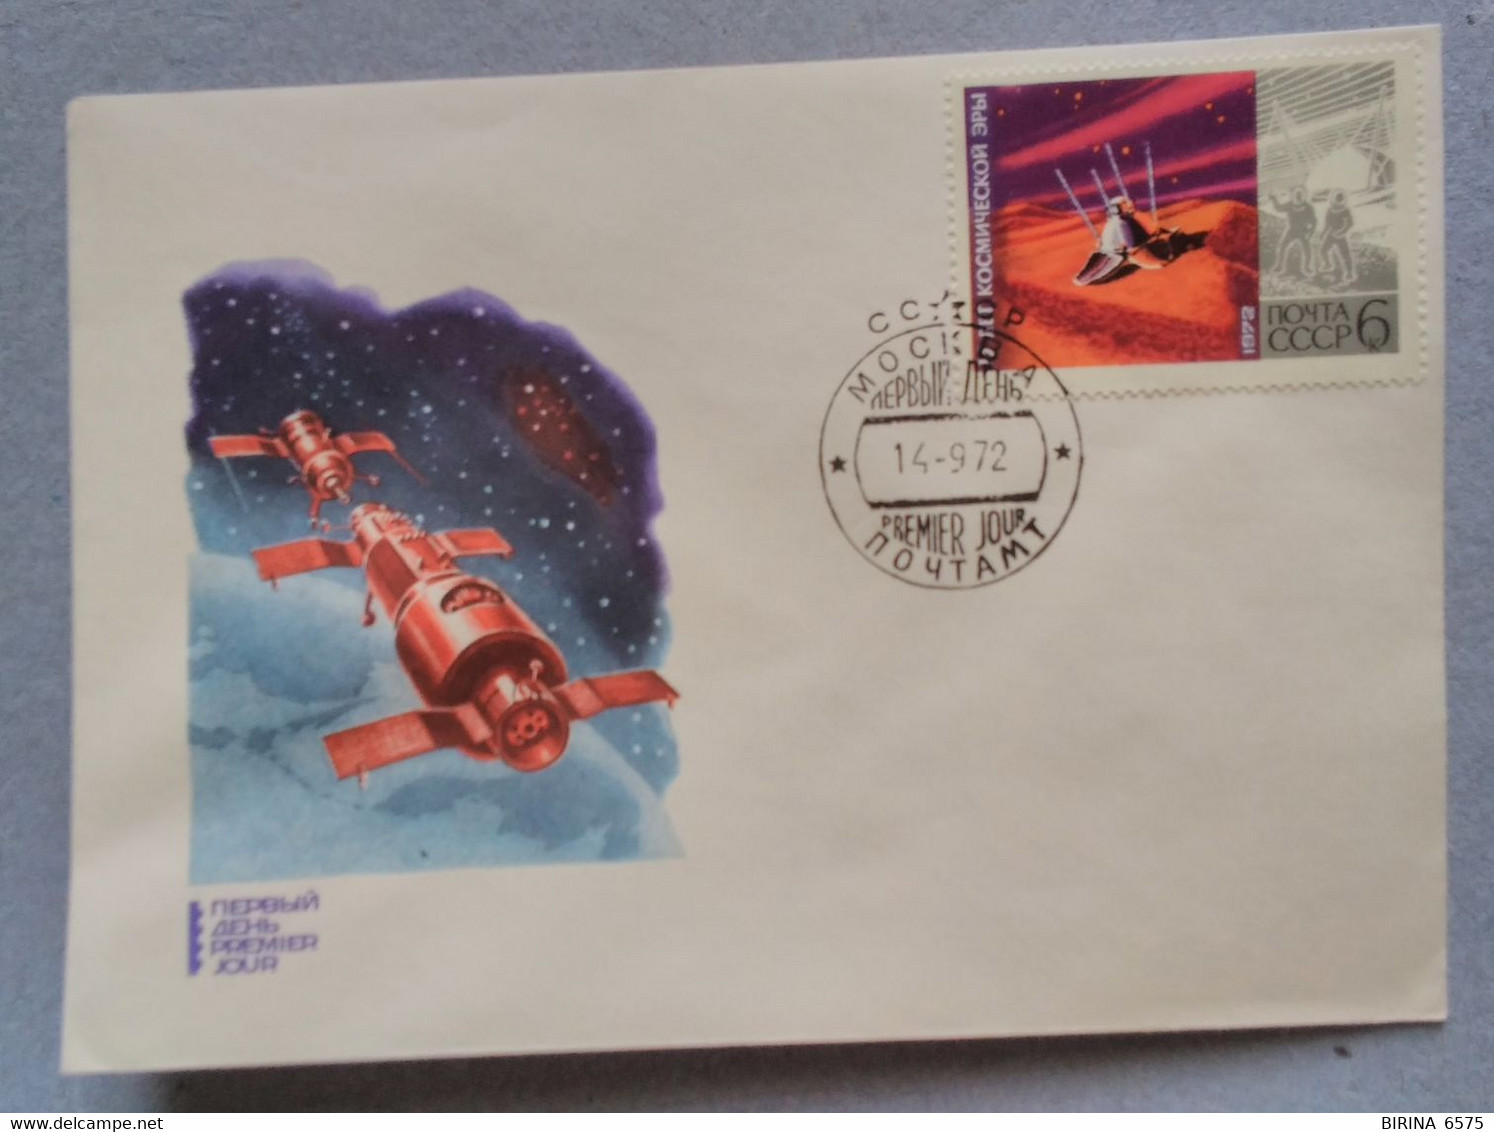 Astronautics. Cosmos. First Day. 1972. Stamp. Postal Envelope. The USSR. - Sammlungen